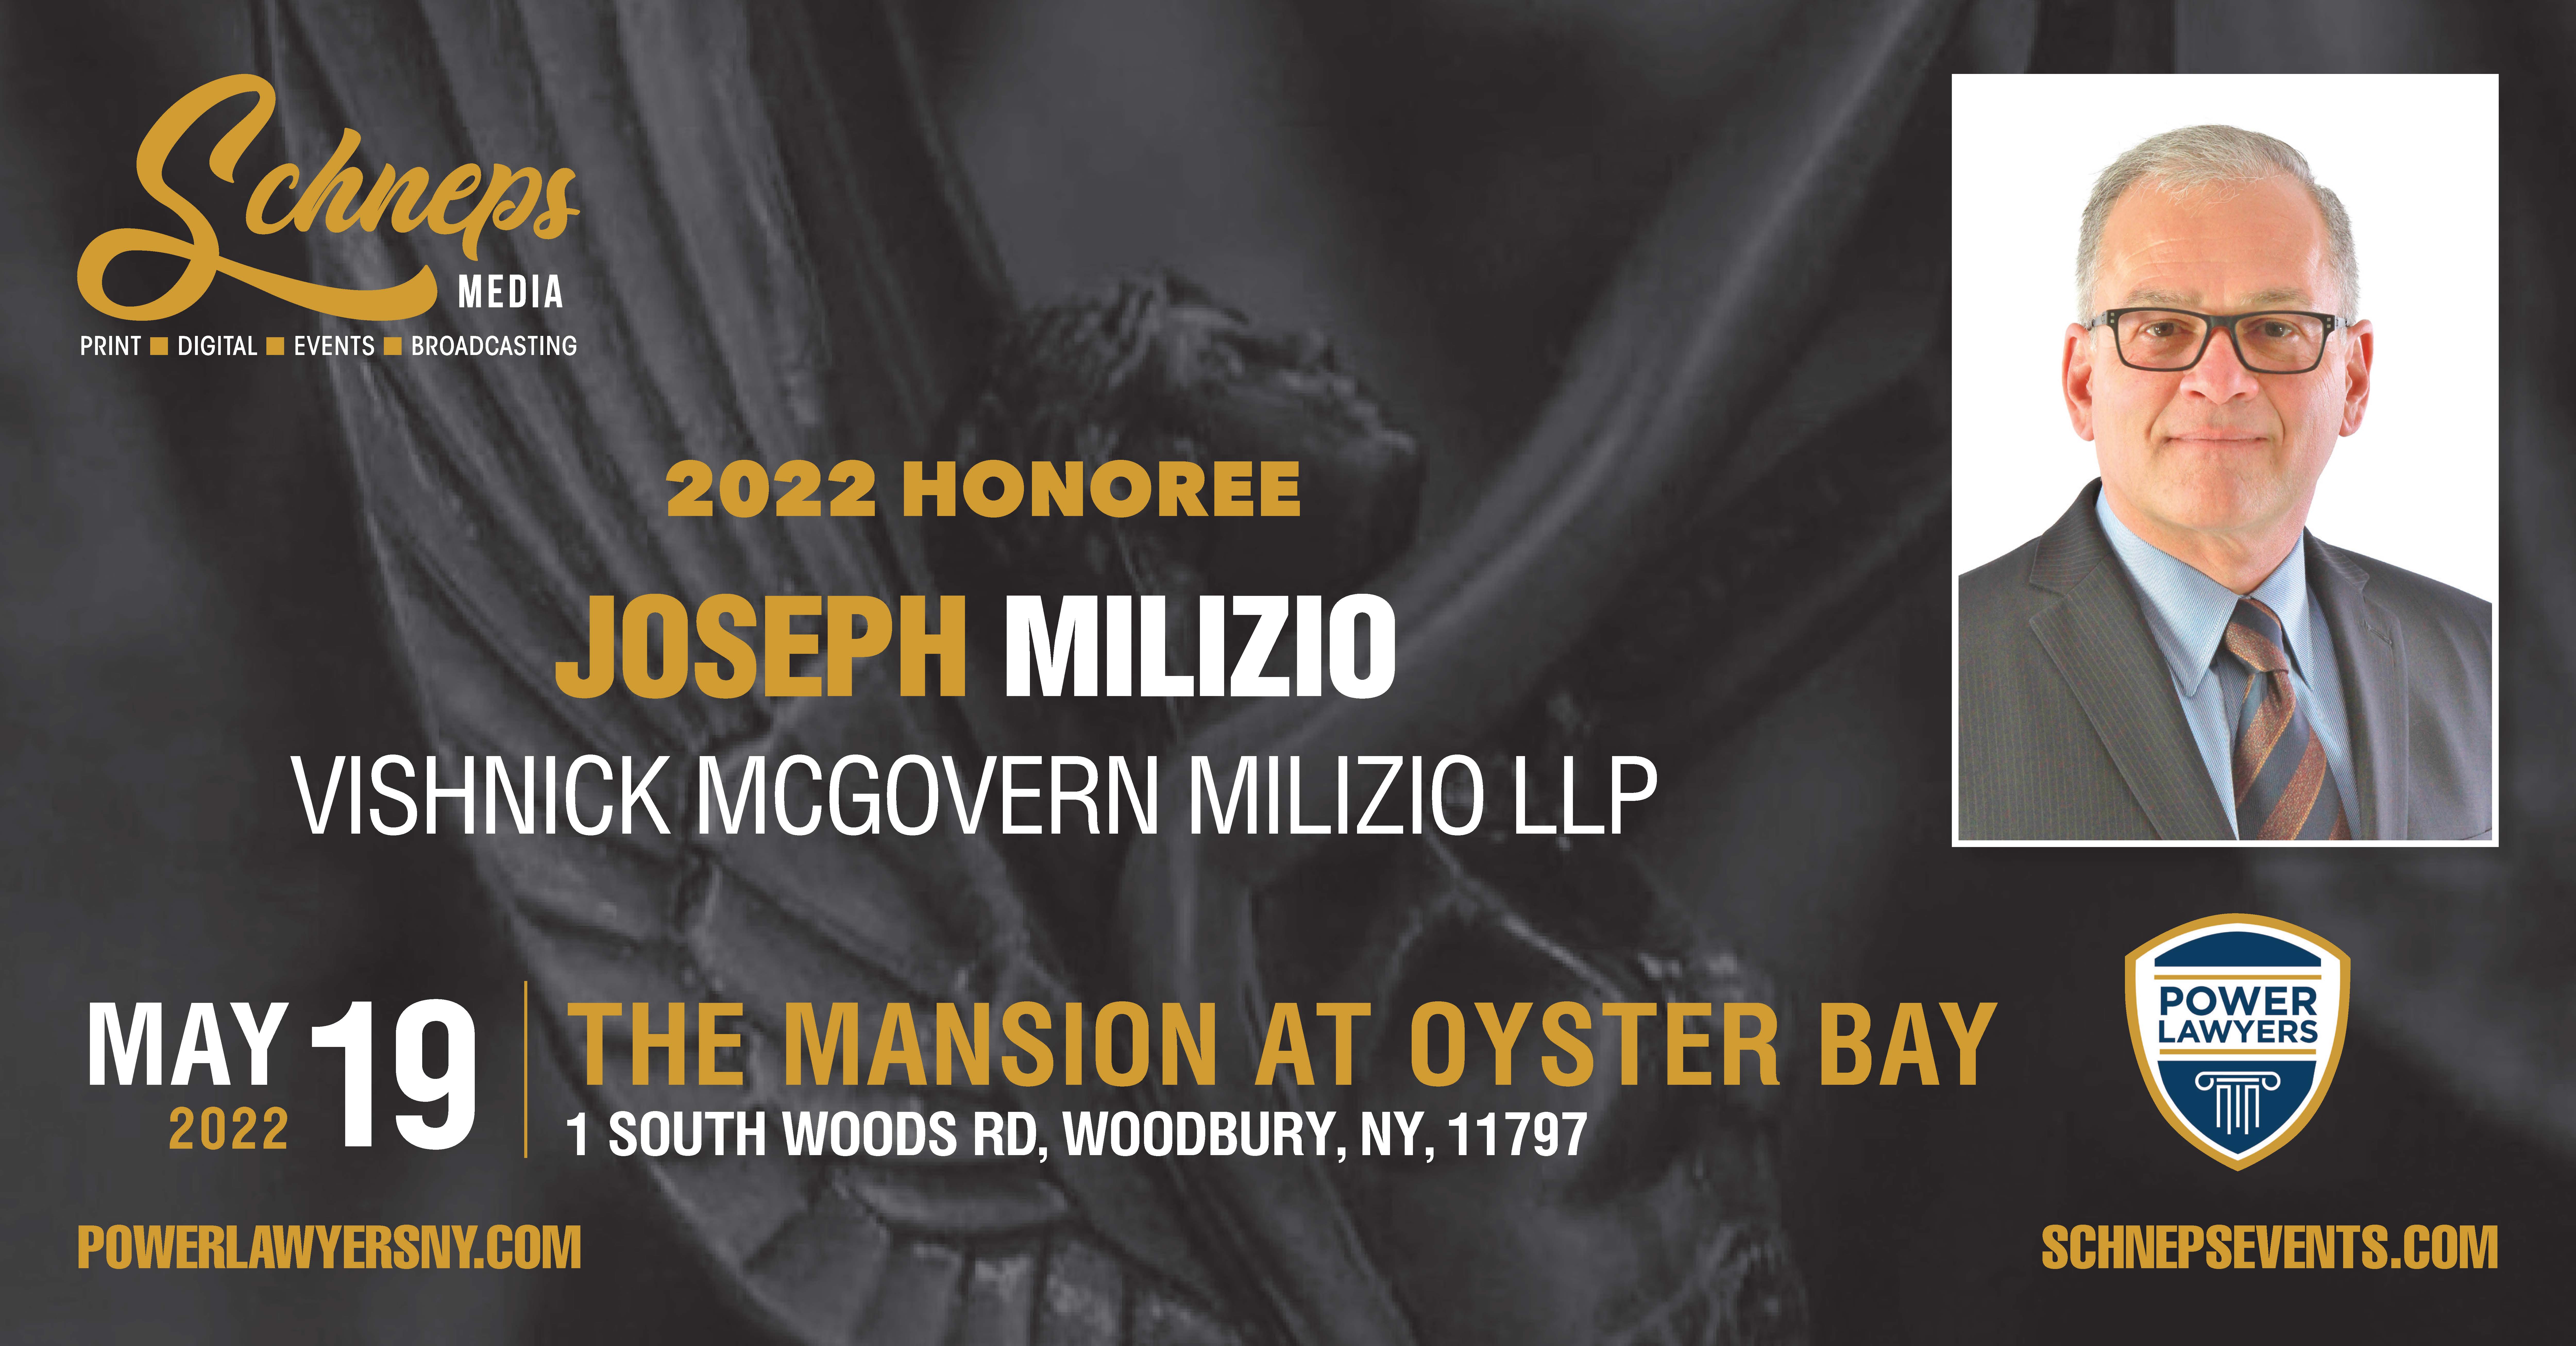 2022 Honoree Joseph Milizio 